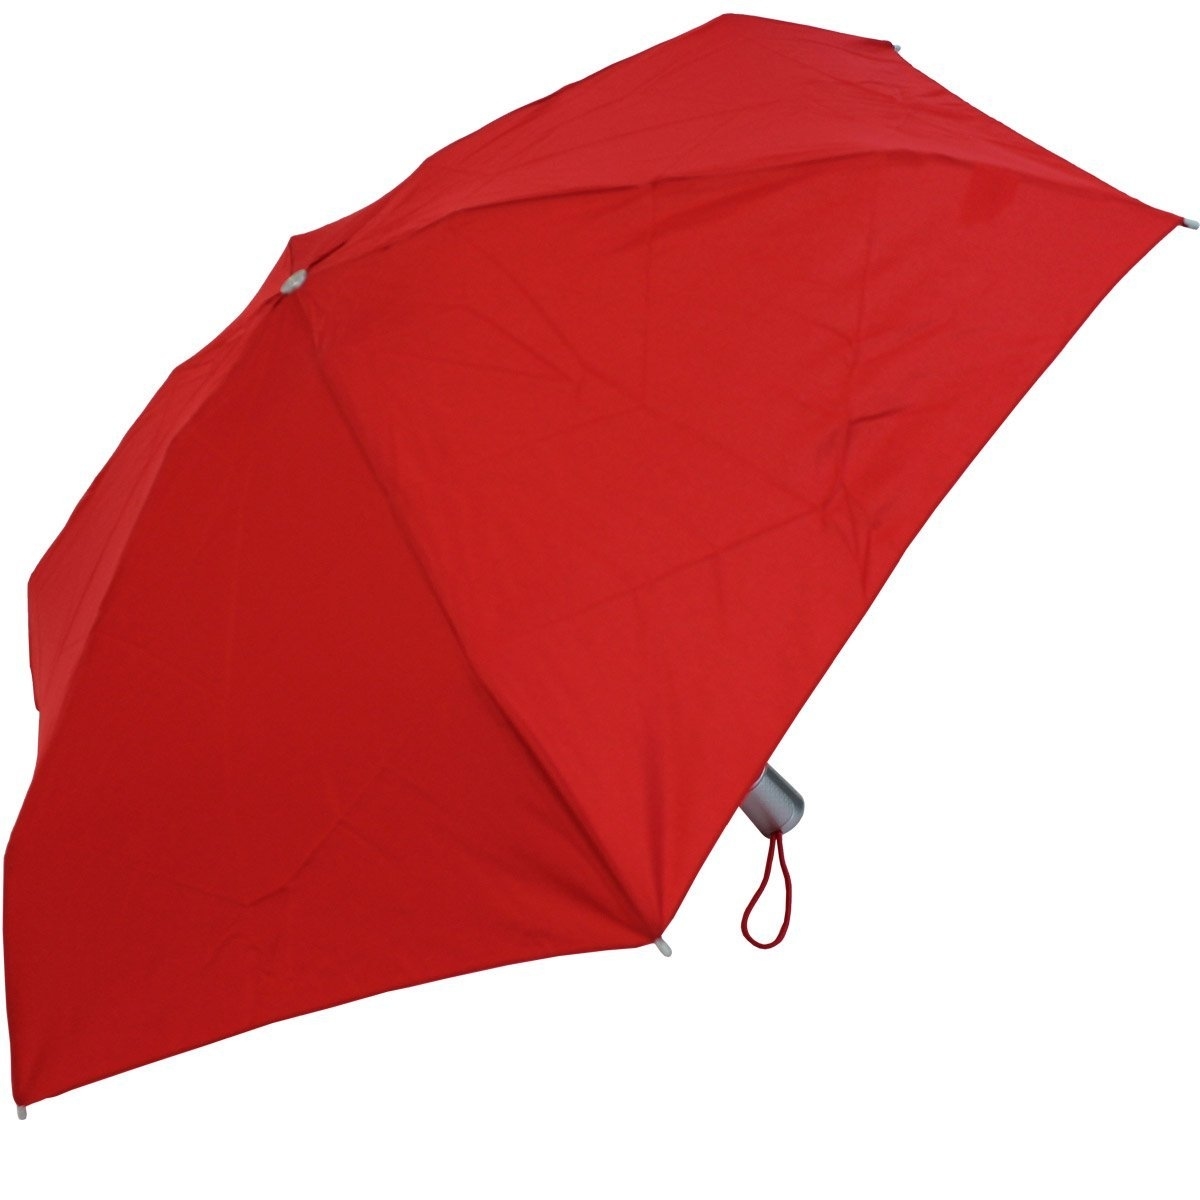 Image of Alu Drop Regenschirm Auto in Tomato